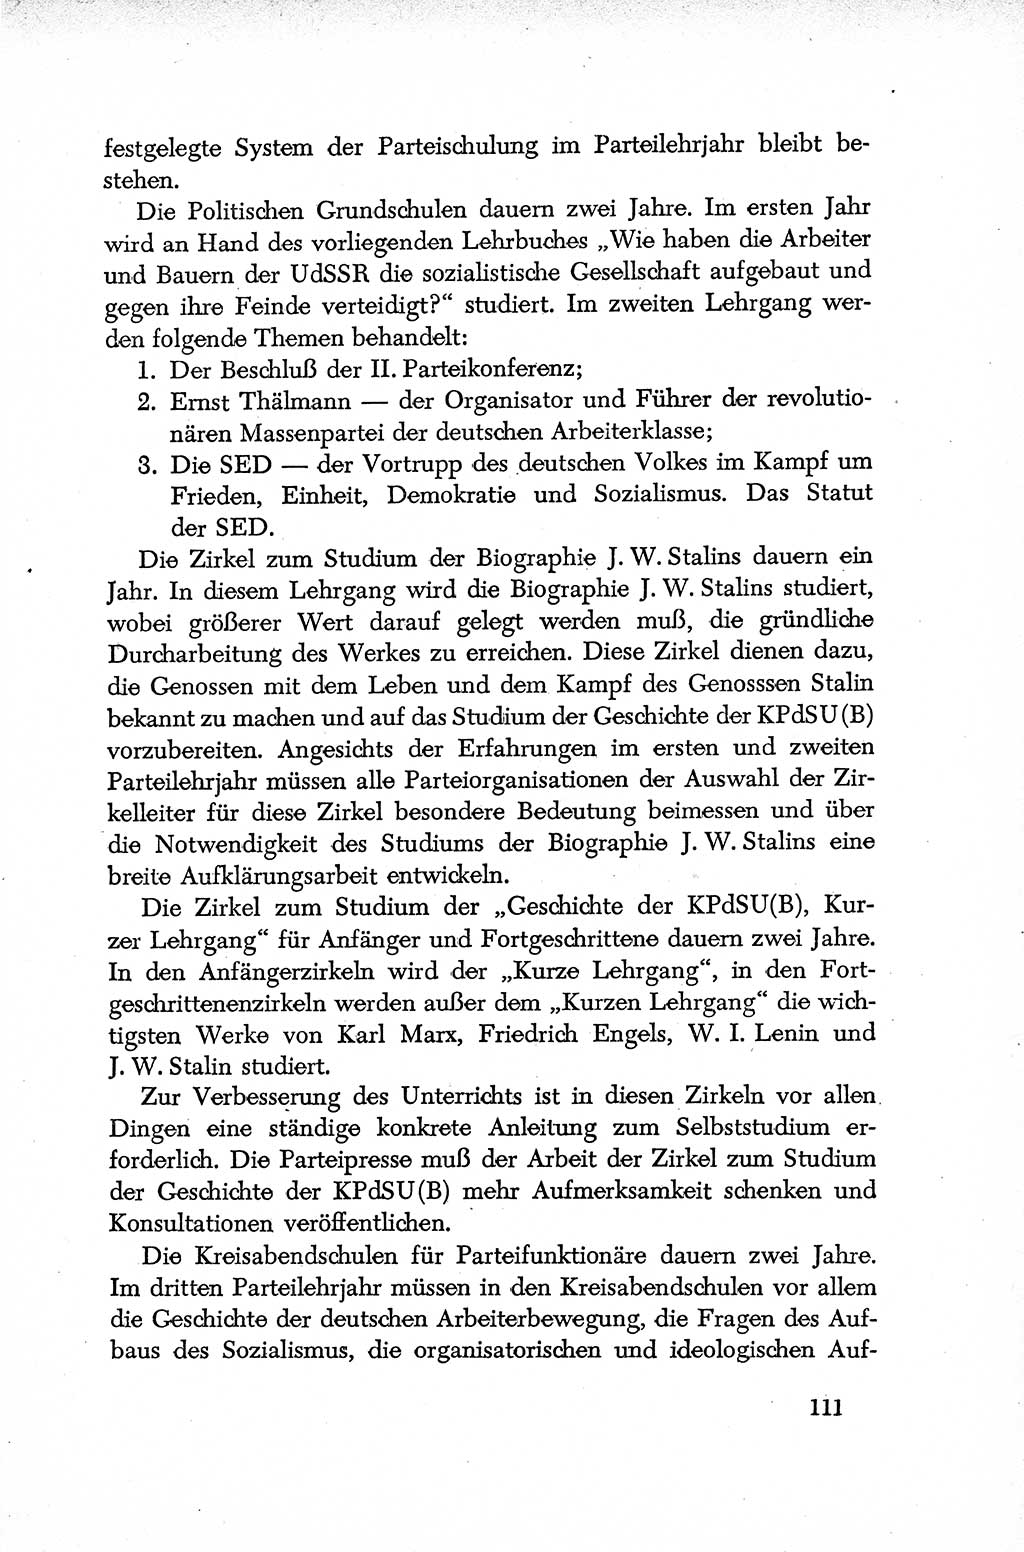 Dokumente der Sozialistischen Einheitspartei Deutschlands (SED) [Deutsche Demokratische Republik (DDR)] 1952-1953, Seite 111 (Dok. SED DDR 1952-1953, S. 111)